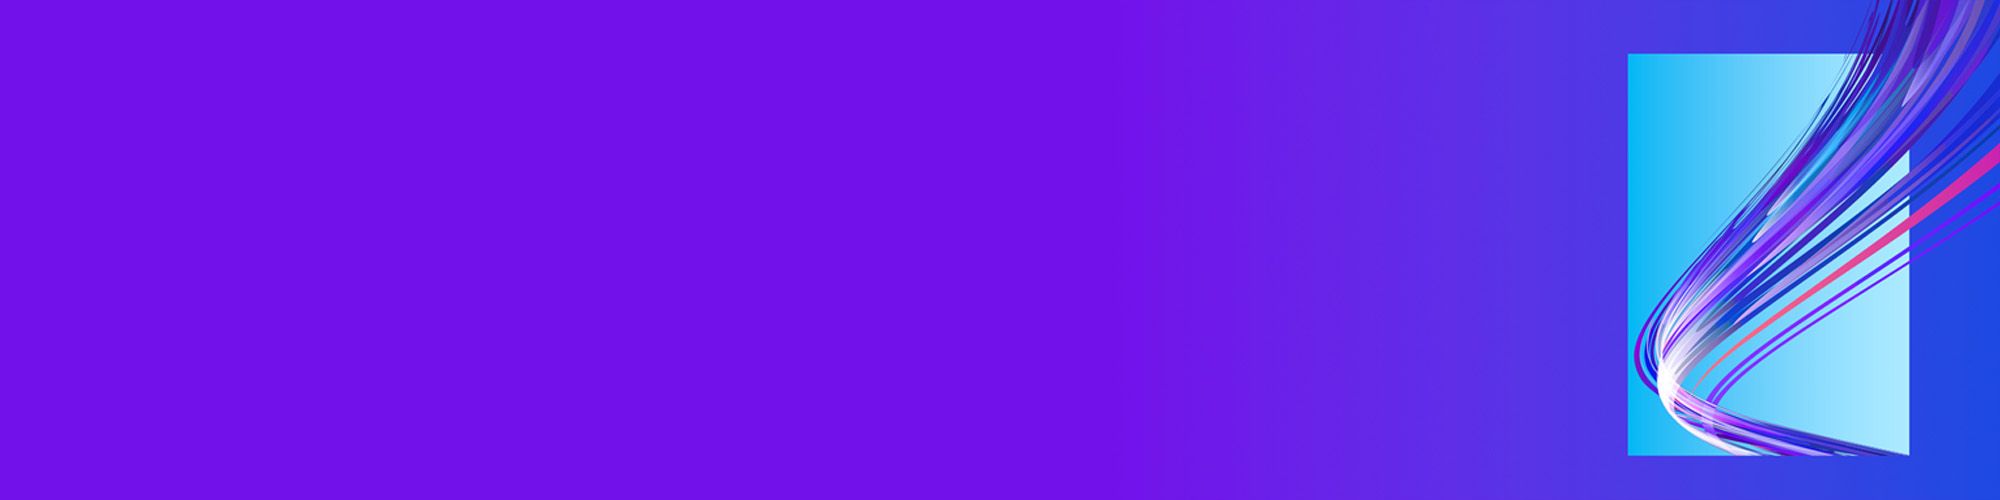 purple lines in light blue window banner